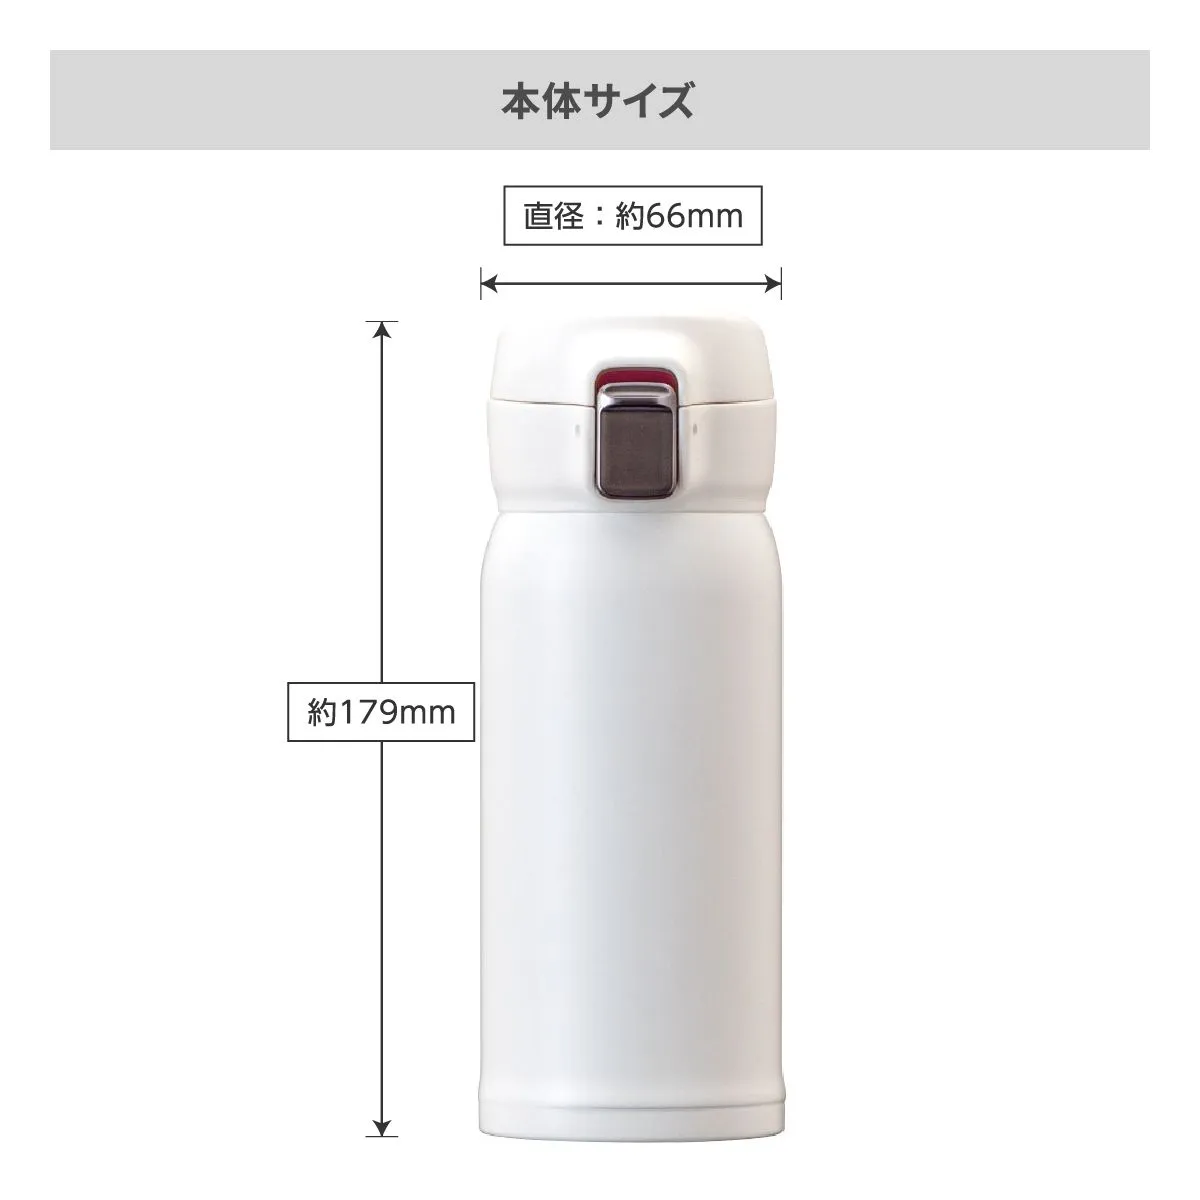 エアリスト 分解できる超軽量ワンタッチボトル 370ml【オリジナルステンレスボトル / 回転シルク印刷】 画像6